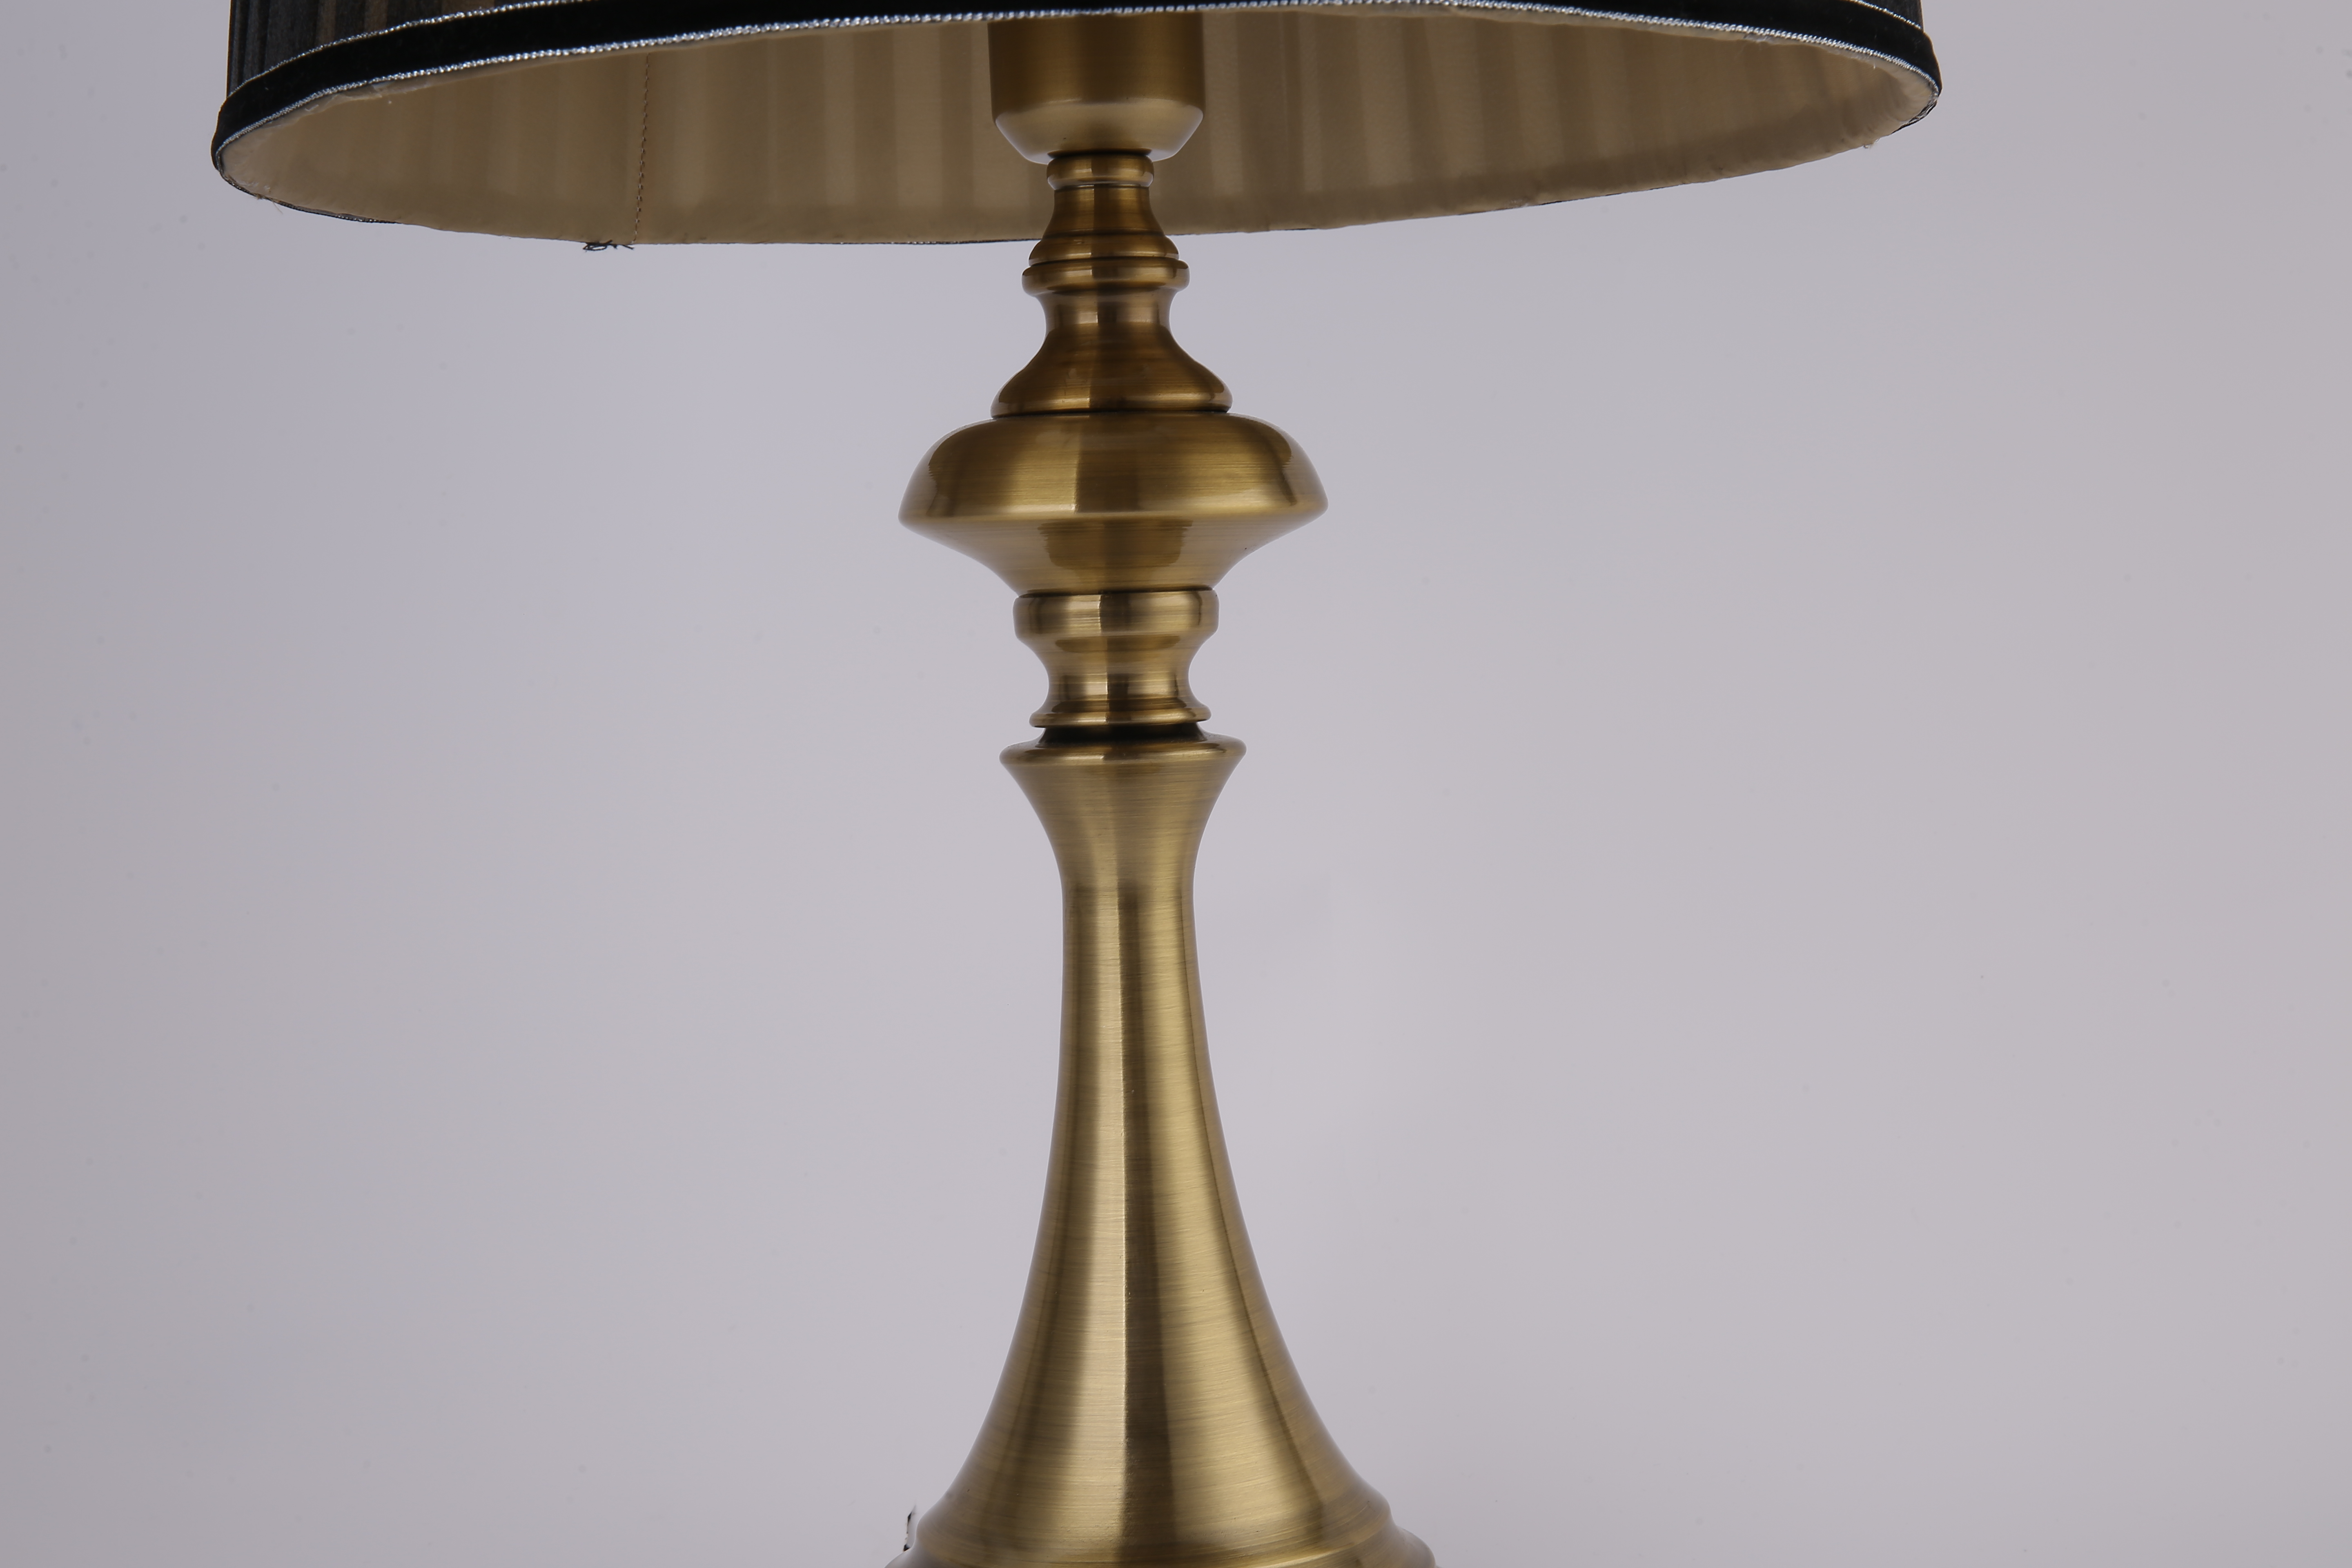 Luz de lujo de cobre del vector de la diosa de las lámparas de vector del oro (DT-8004)